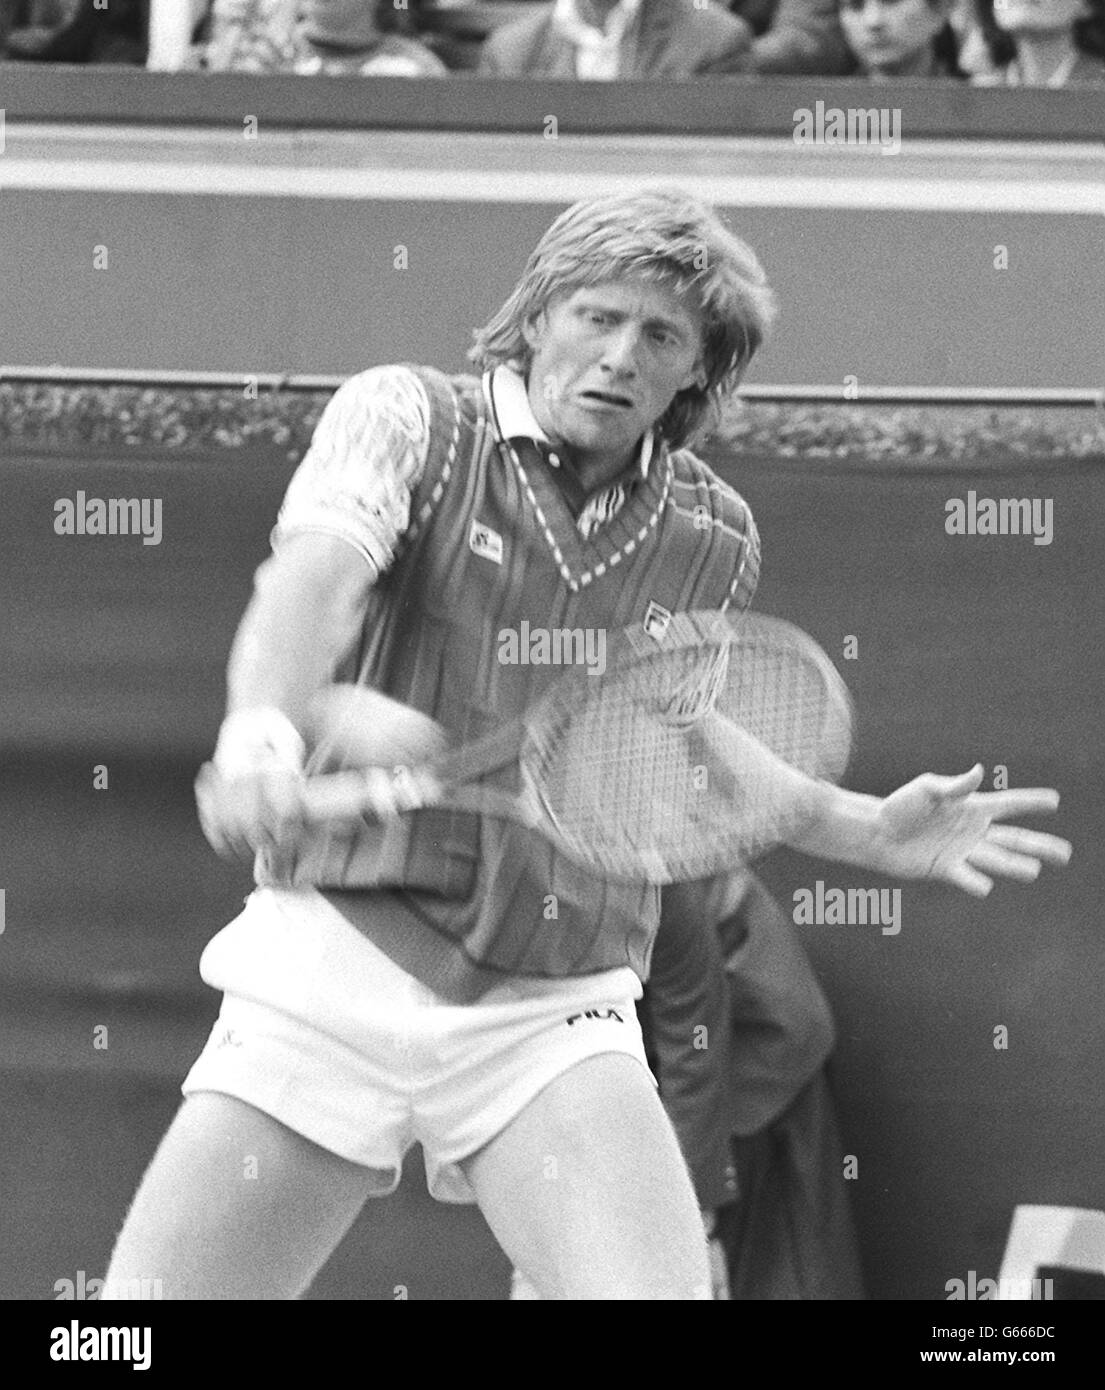 Boris Becker en action au Queen's Club de Londres, dans la finale du championnat de tennis Stella Artois. Banque D'Images